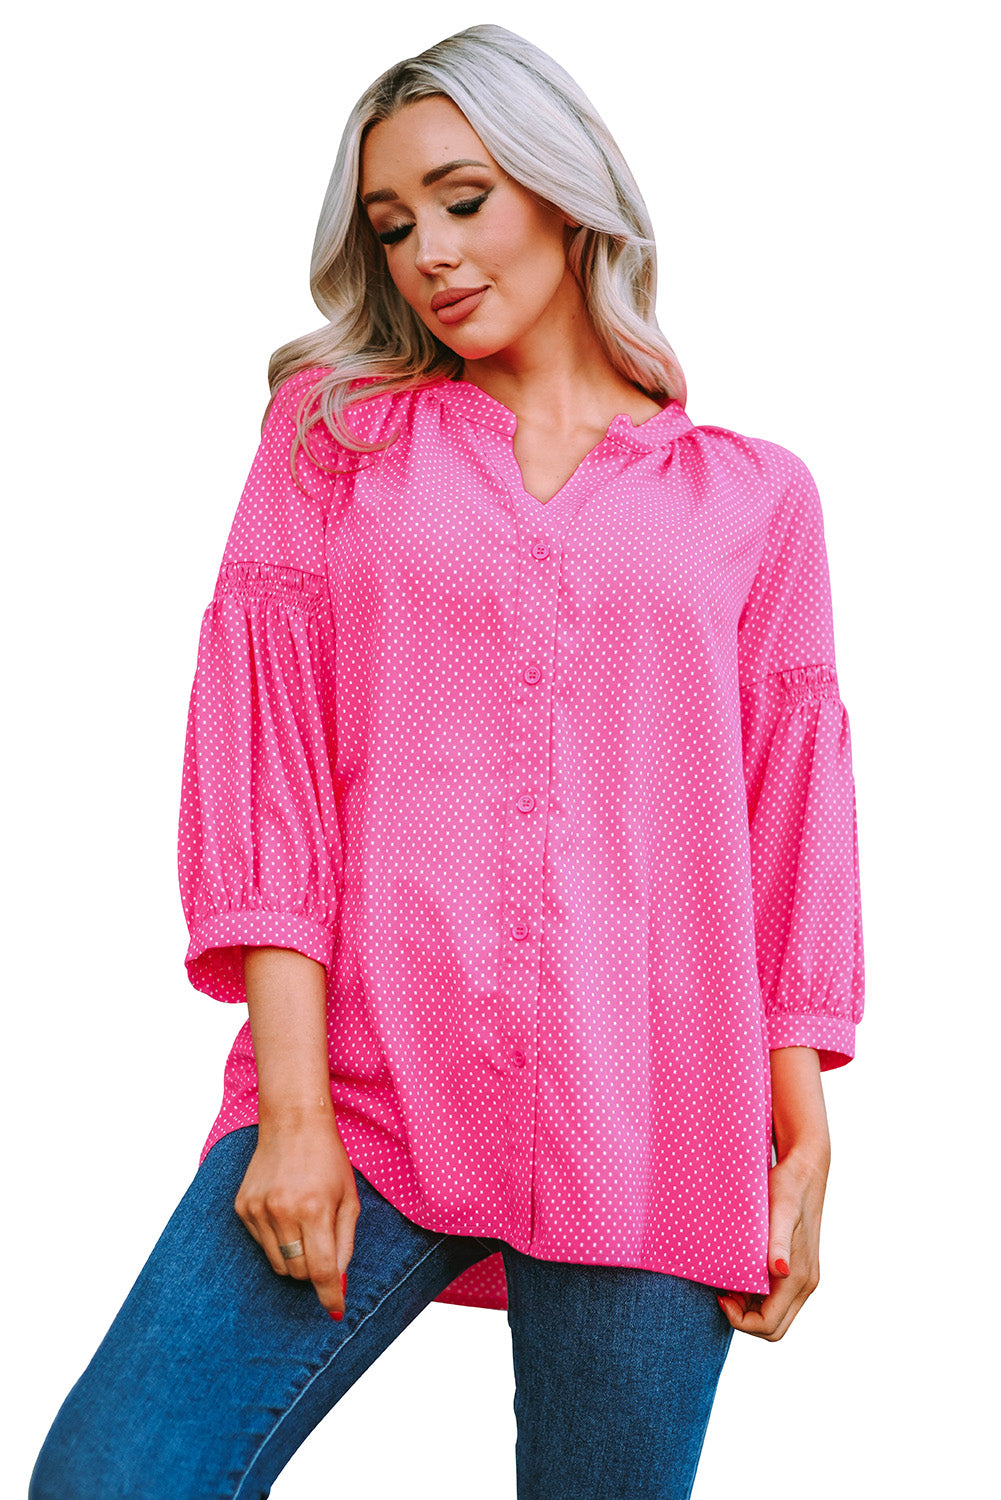 Ružičasta široka košulja s točkastim printom 3/4 rukava